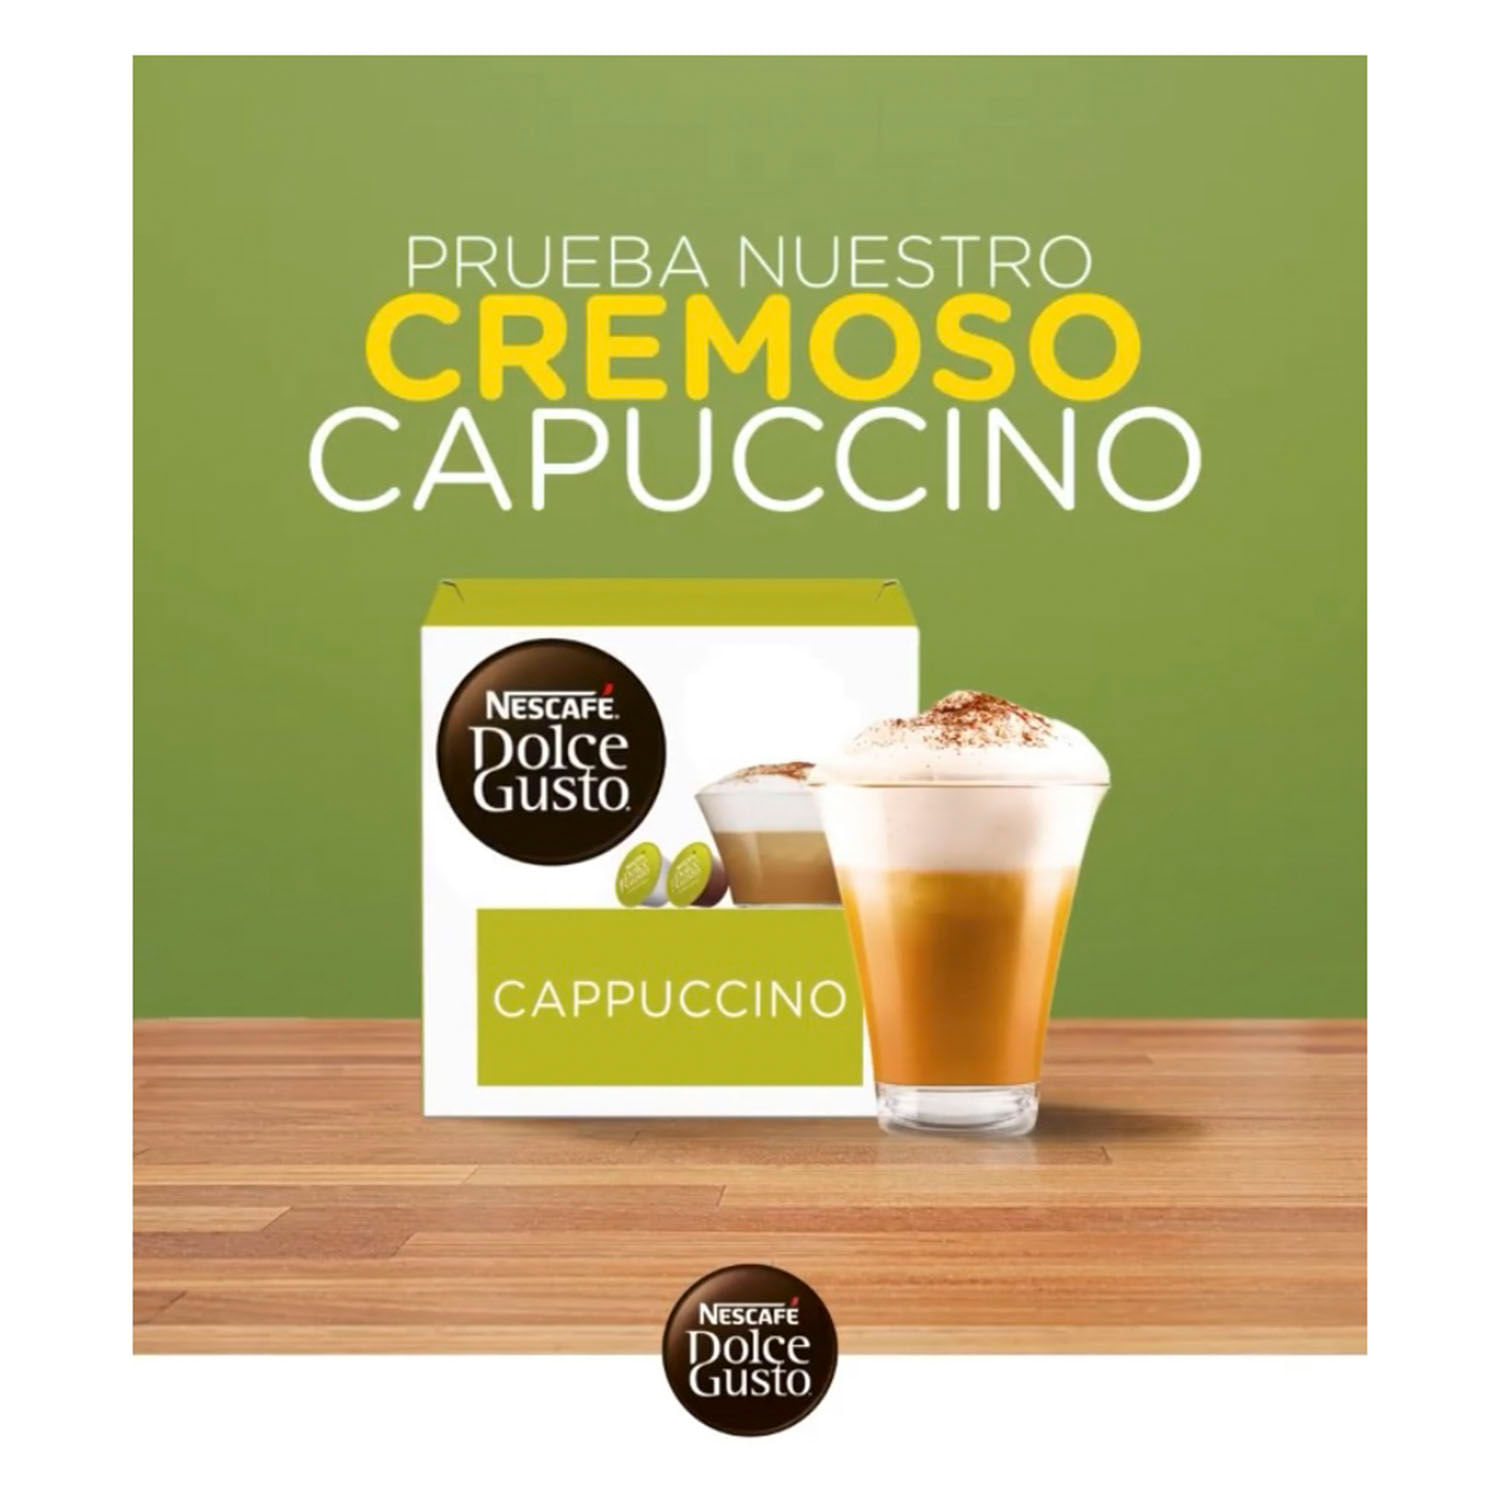  Nescafe Dolce Gusto Chococino 8 per pack - Pack de 2 : Comida  Gourmet y Alimentos